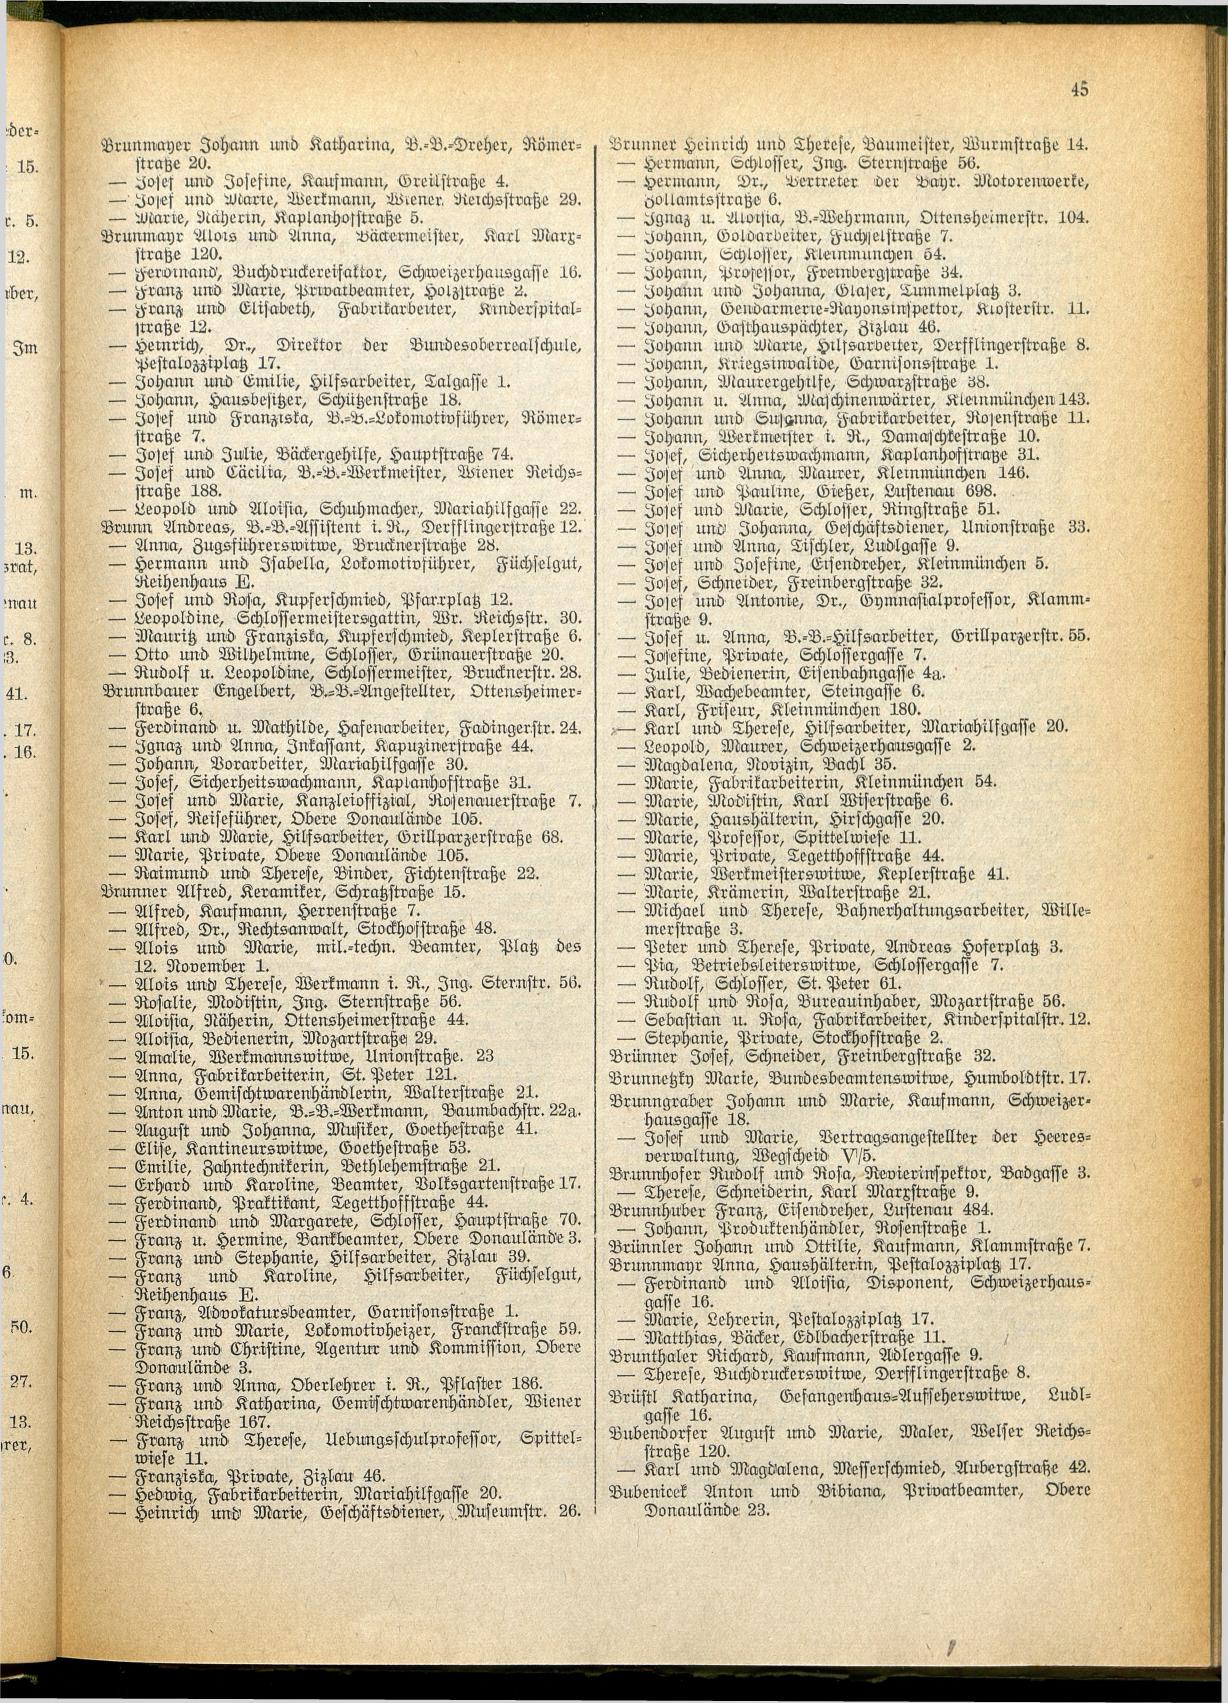 Amtliches Linzer Adreßbuch 1928 - Seite 47